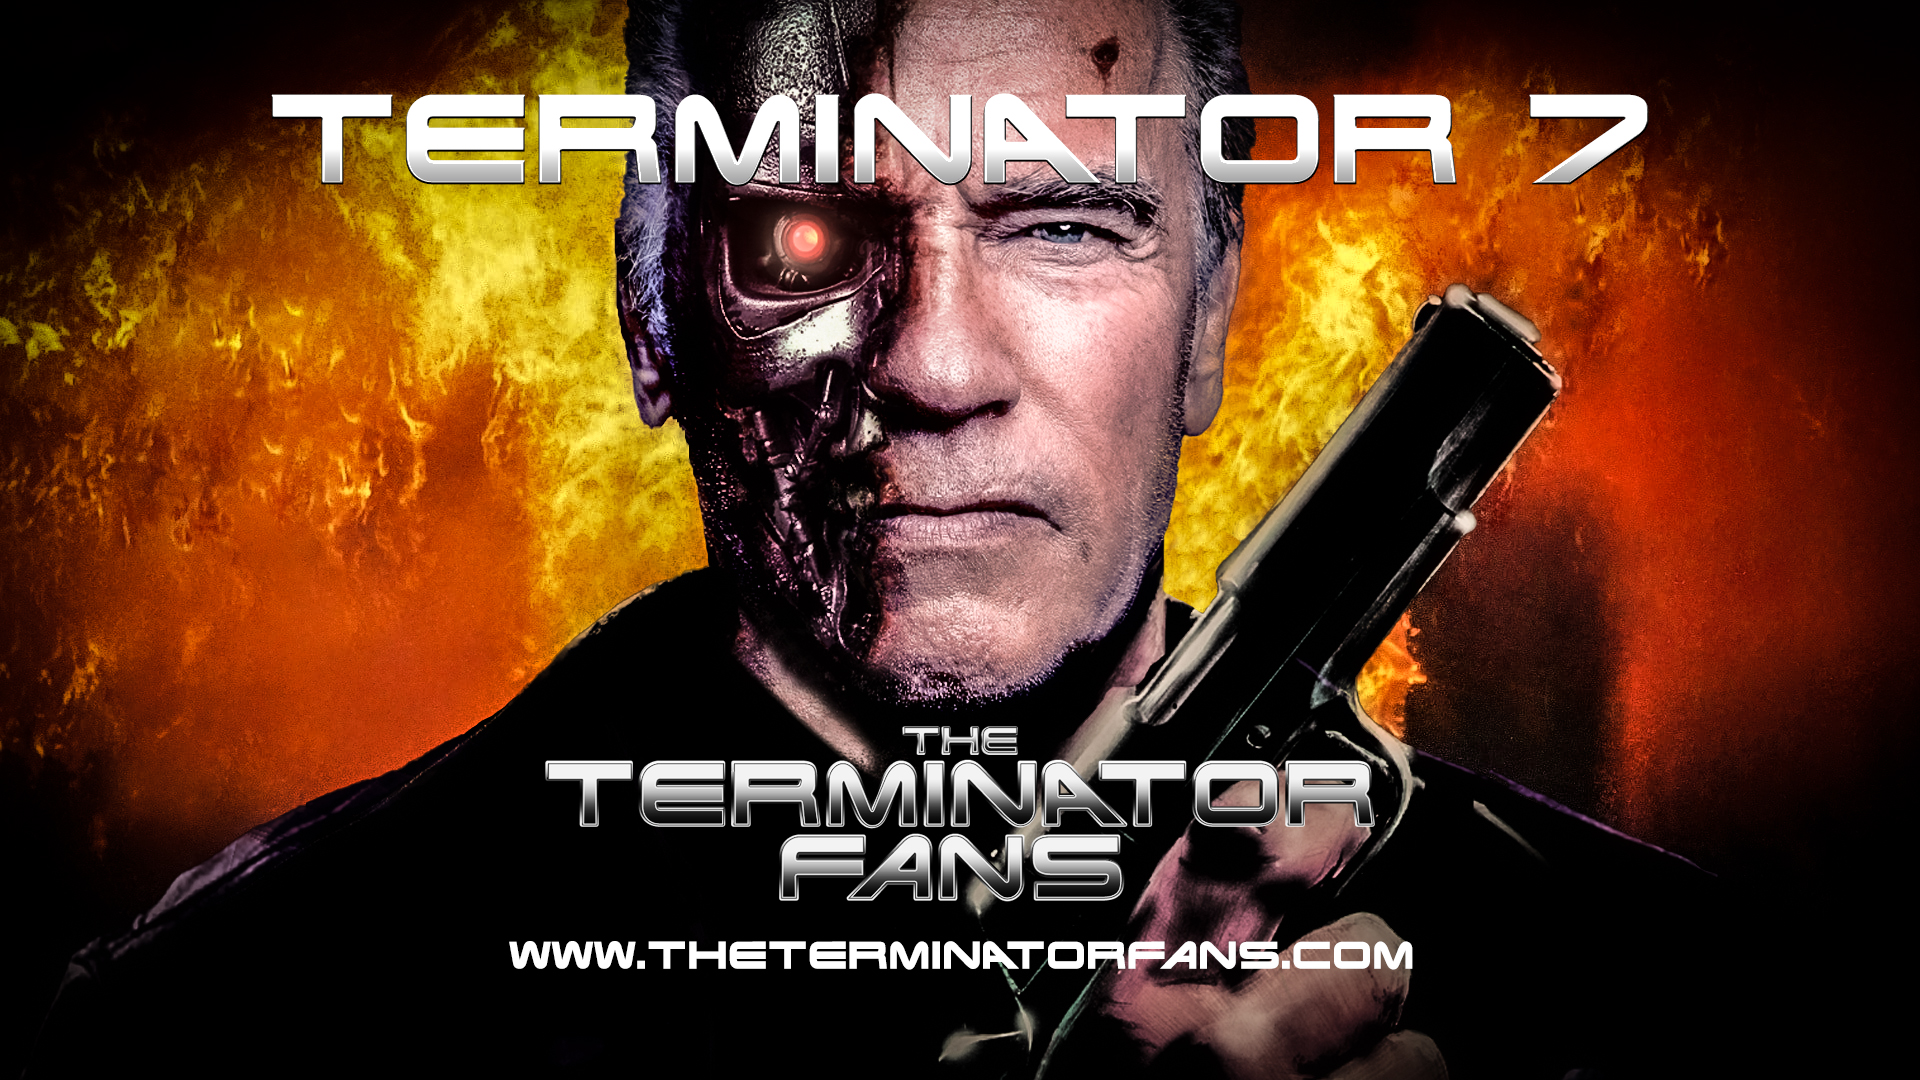 Schwarzenegger Signed On For Terminator 7 Horror Movie?